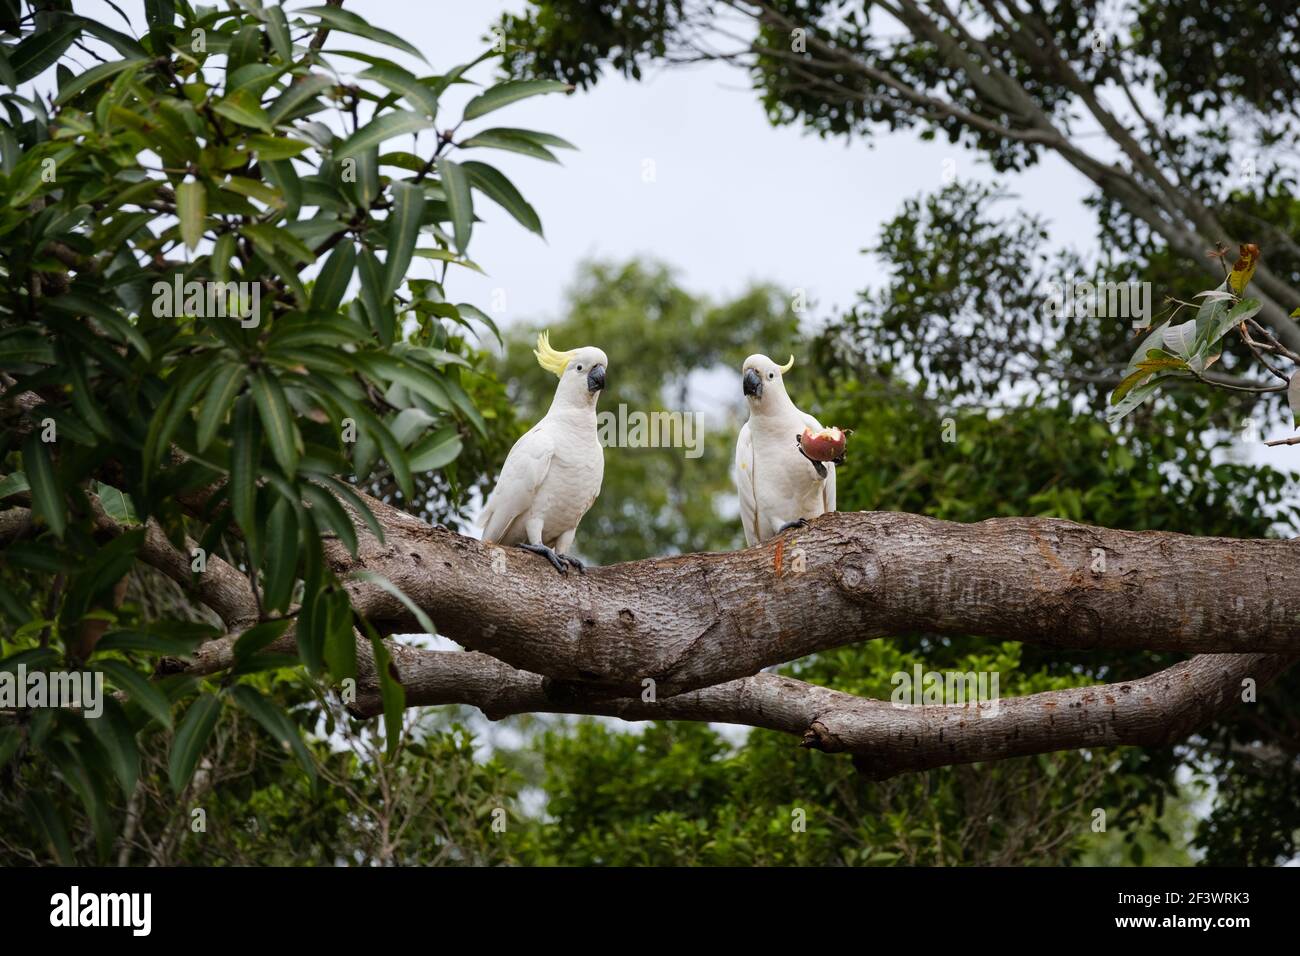 Zwei Schwefel-Haubenkakadus in Australien, die der Kamera gegenüberstehen, nachdem sie eine ganze Passionsfrucht gegessen haben, die in ihren Krallen gehalten wurde. Stockfoto